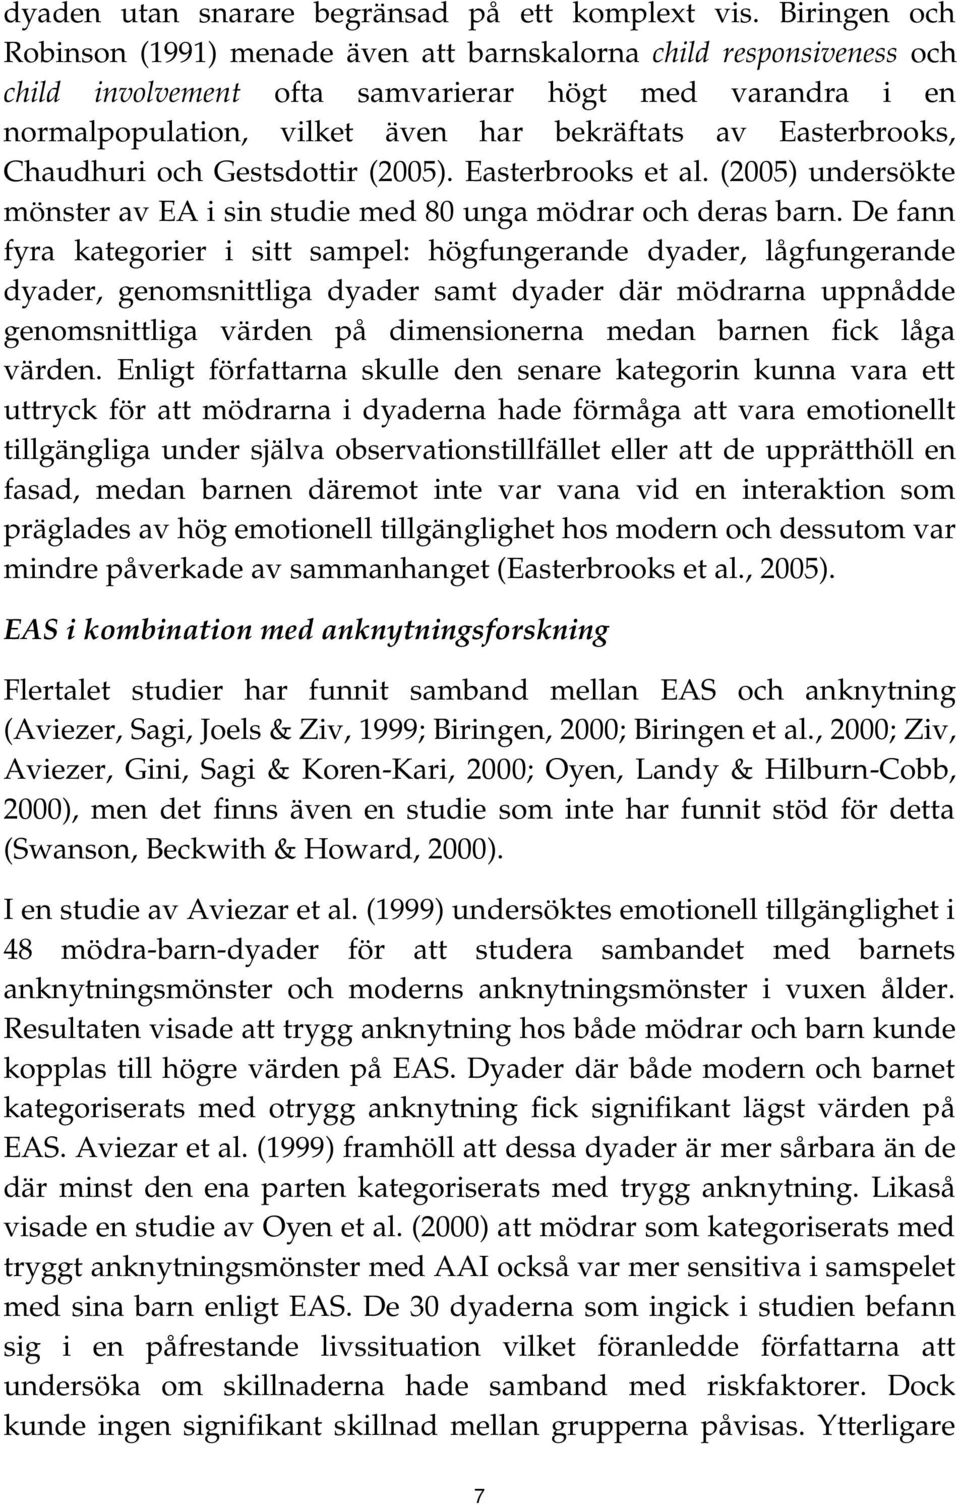 Easterbrooks, Chaudhuri och Gestsdottir (2005). Easterbrooks et al. (2005) undersökte mönster av EA i sin studie med 80 unga mödrar och deras barn.